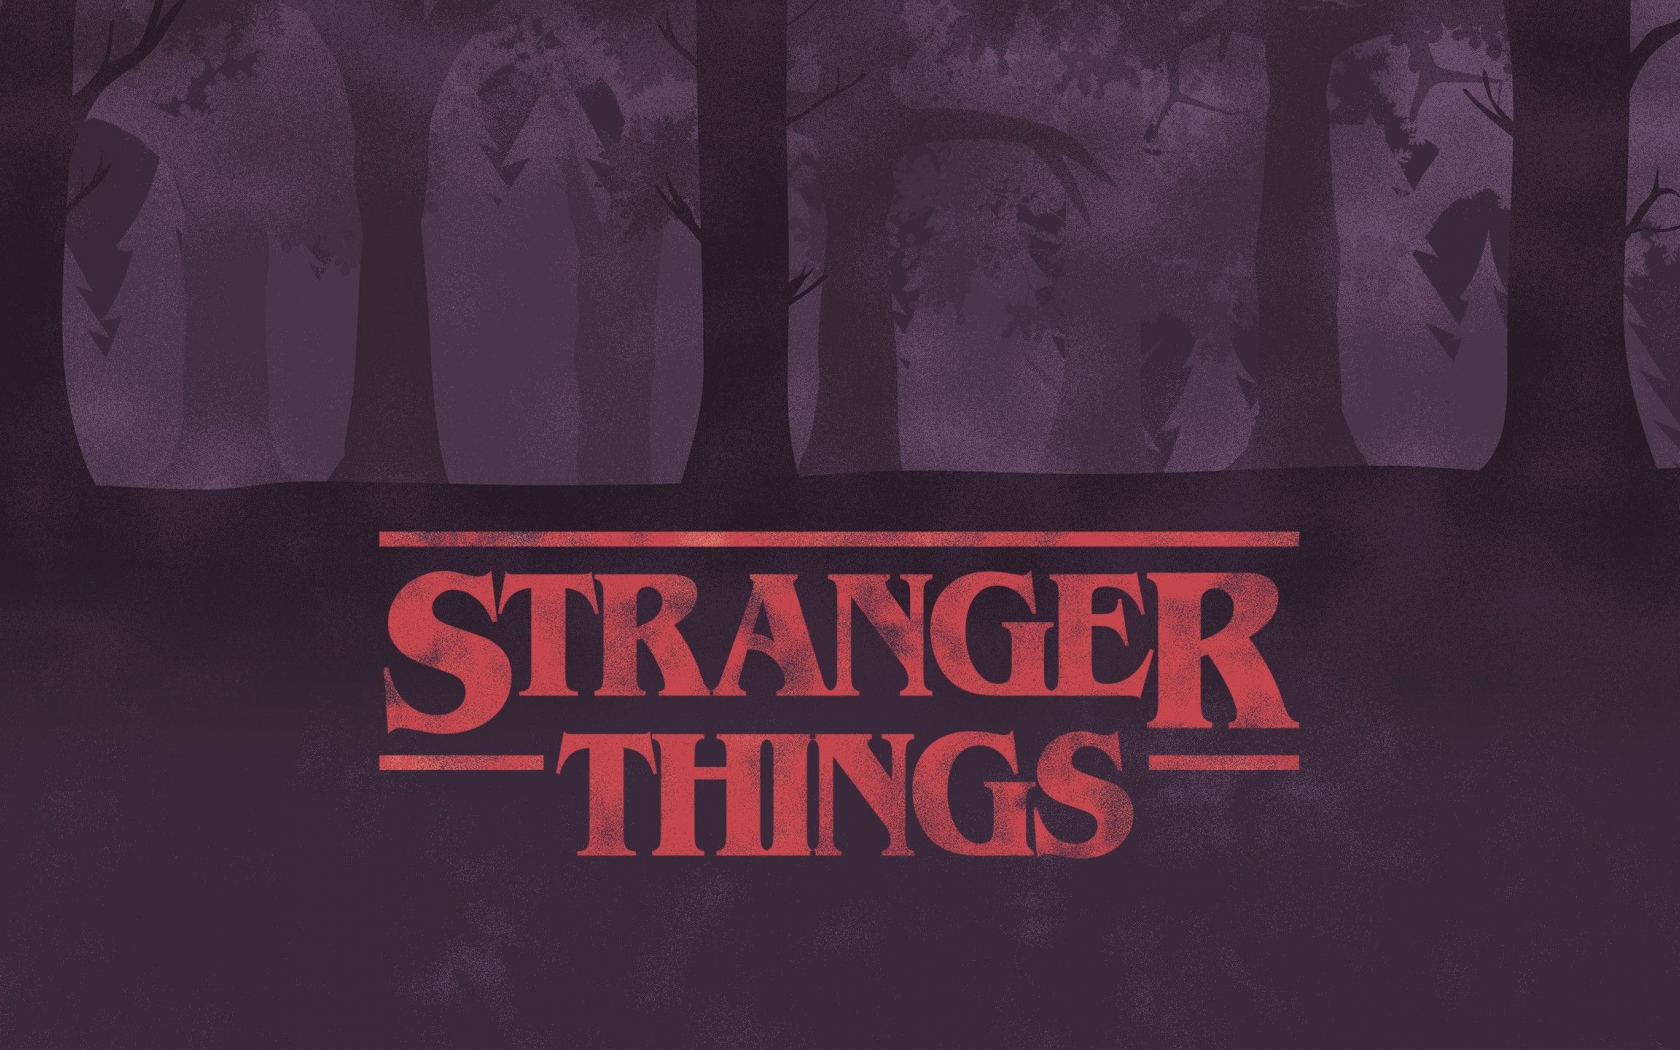 Free download Stranger Things Aesthetic Laptop Wallpaper